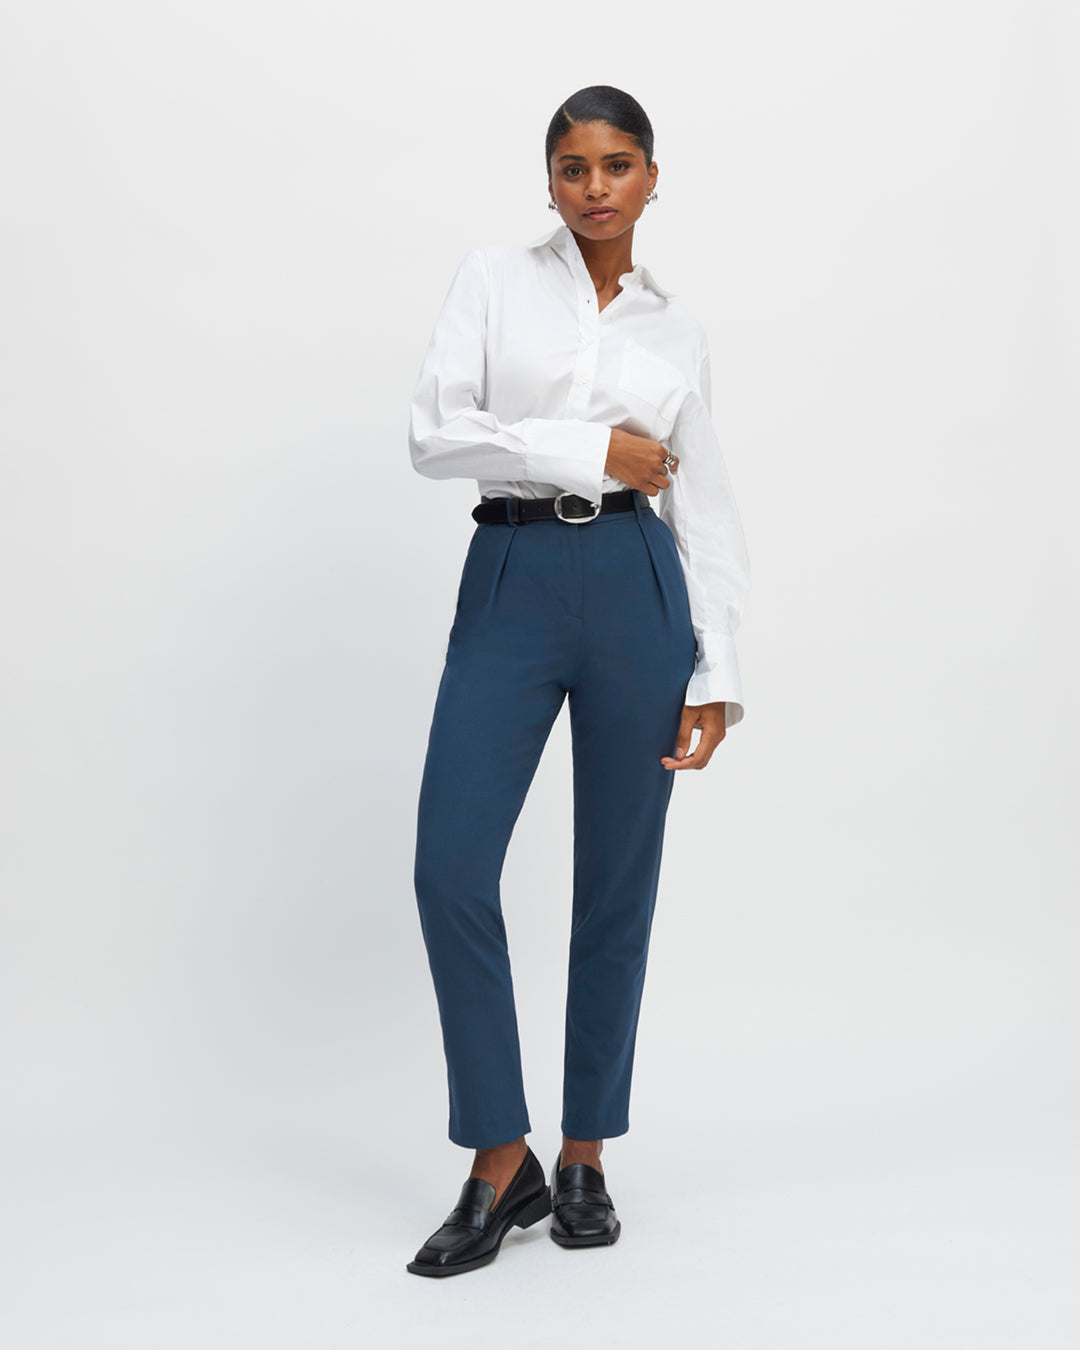 Pantalon-tailleur-bleu-gris-Coupe-7-8eme-taille-haute-Plis-sous-la-ceinture-Deux-poches-a-l’italienne-Ceinture-assortie-ton-sur-ton-17H10-tailleurs-pour-femme-paris-